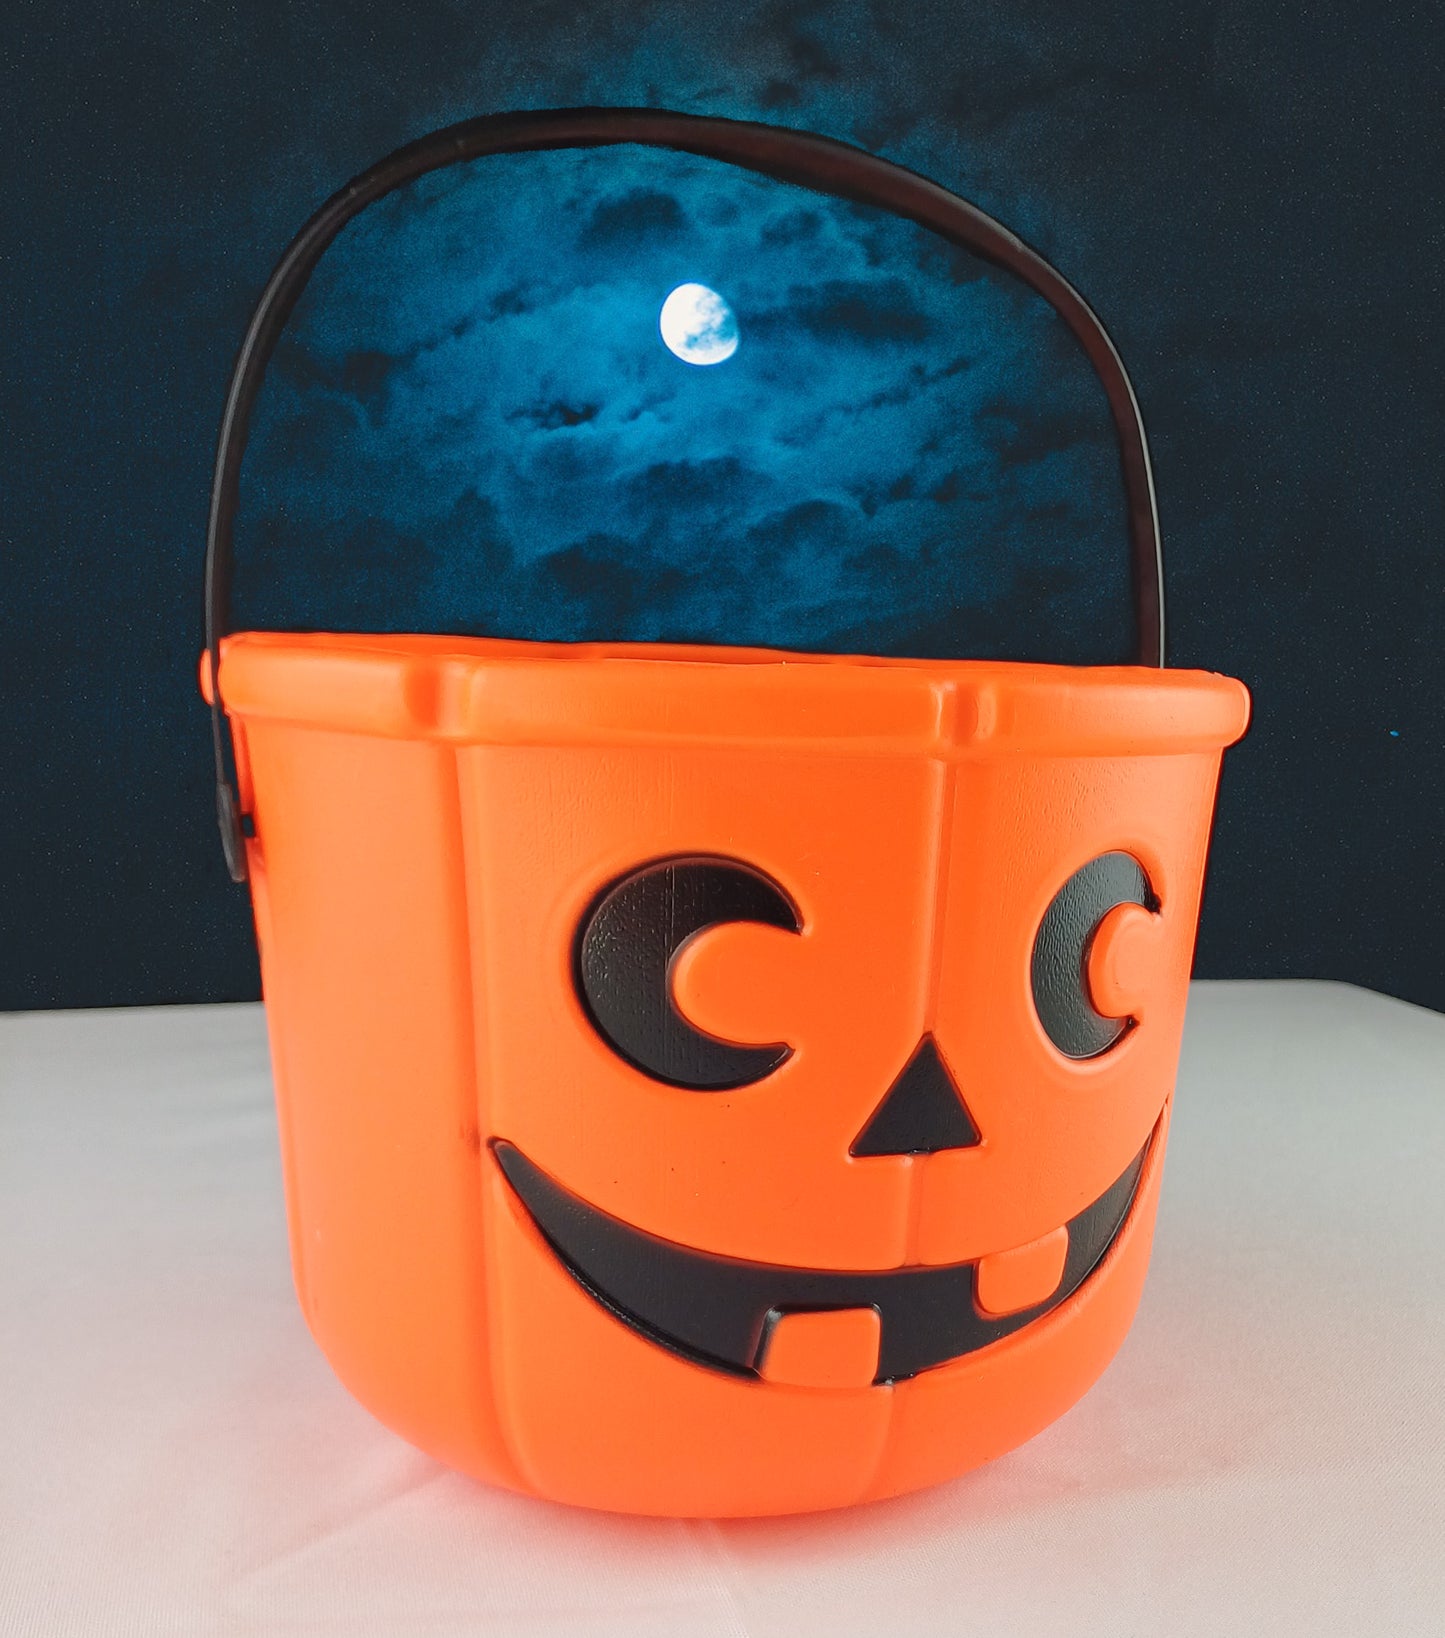 Halloween Pumpkin Bucket